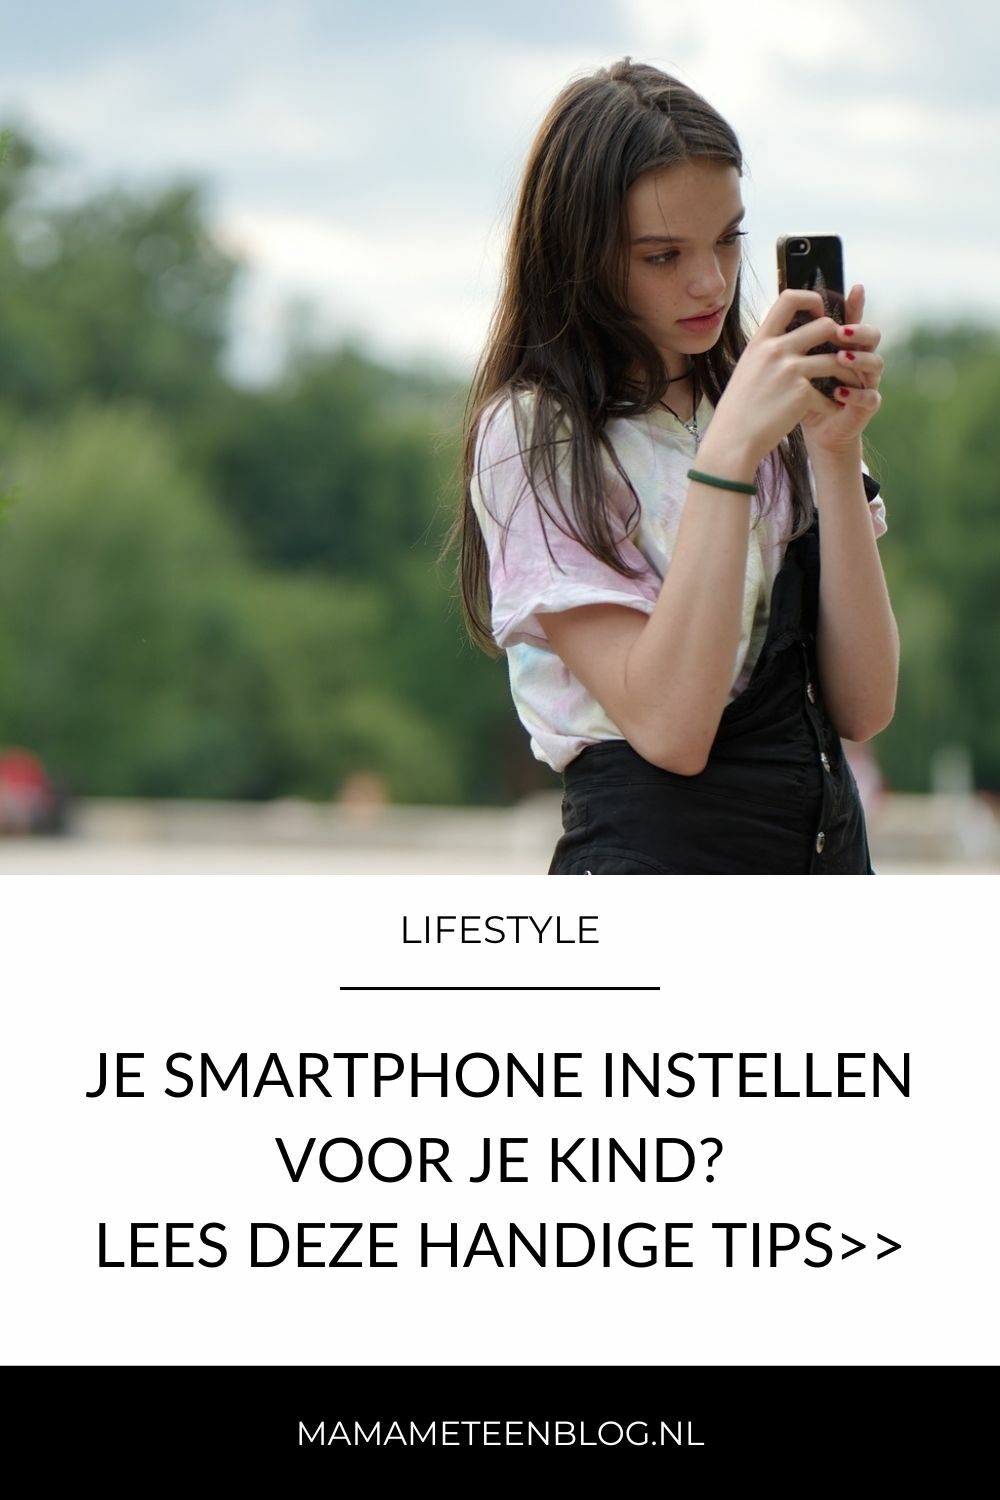 Je smartphone instellen voor je kind mamameteenblog.nl